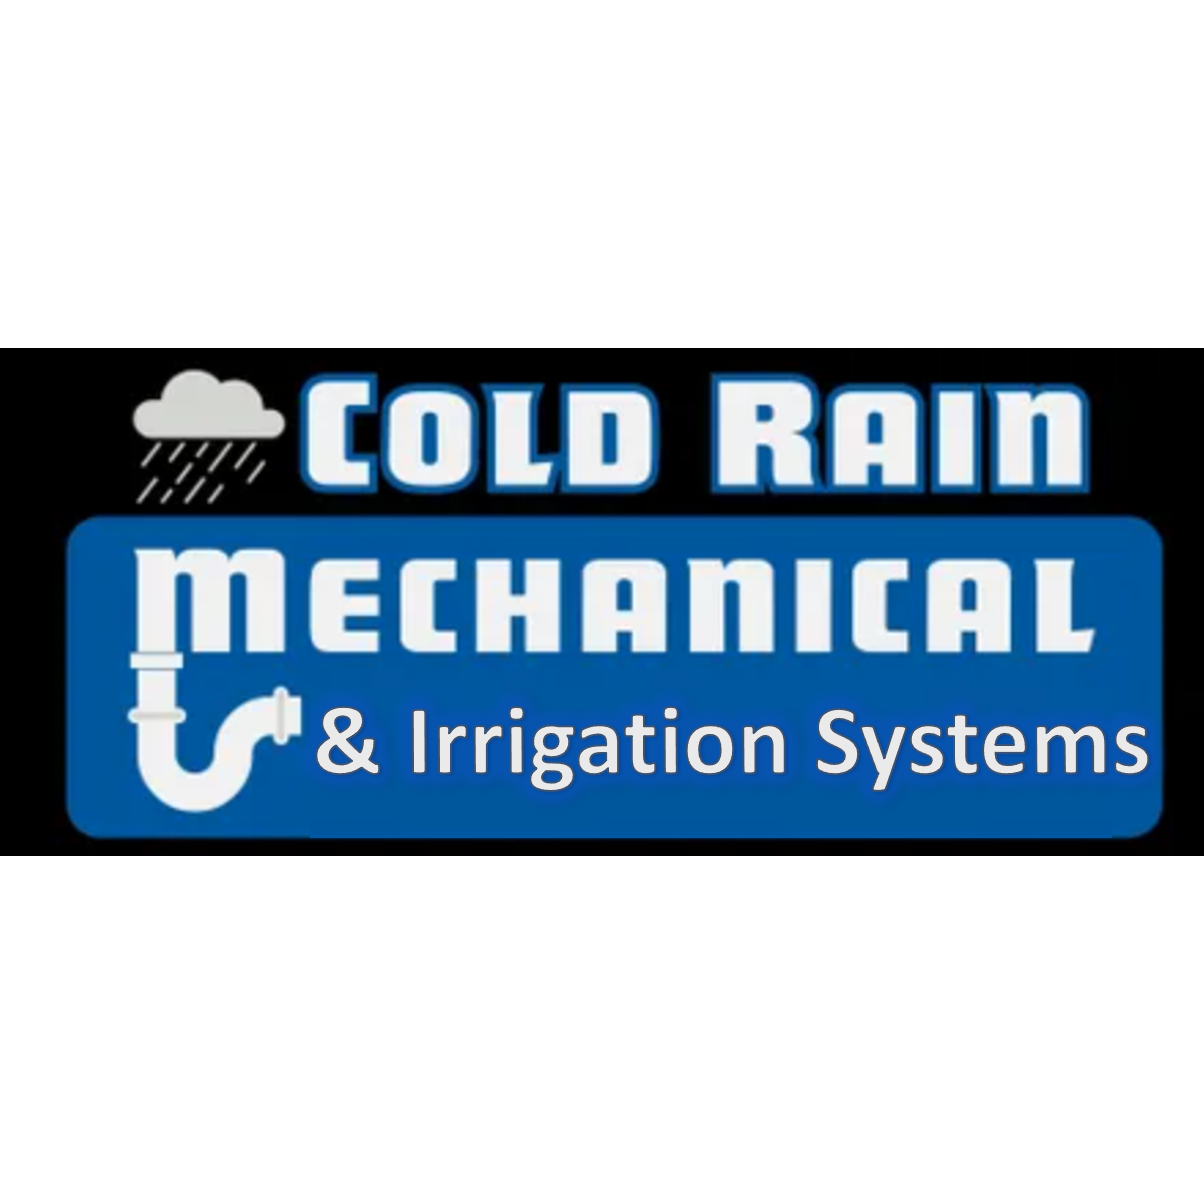 Cold Rain Mechanical LLC